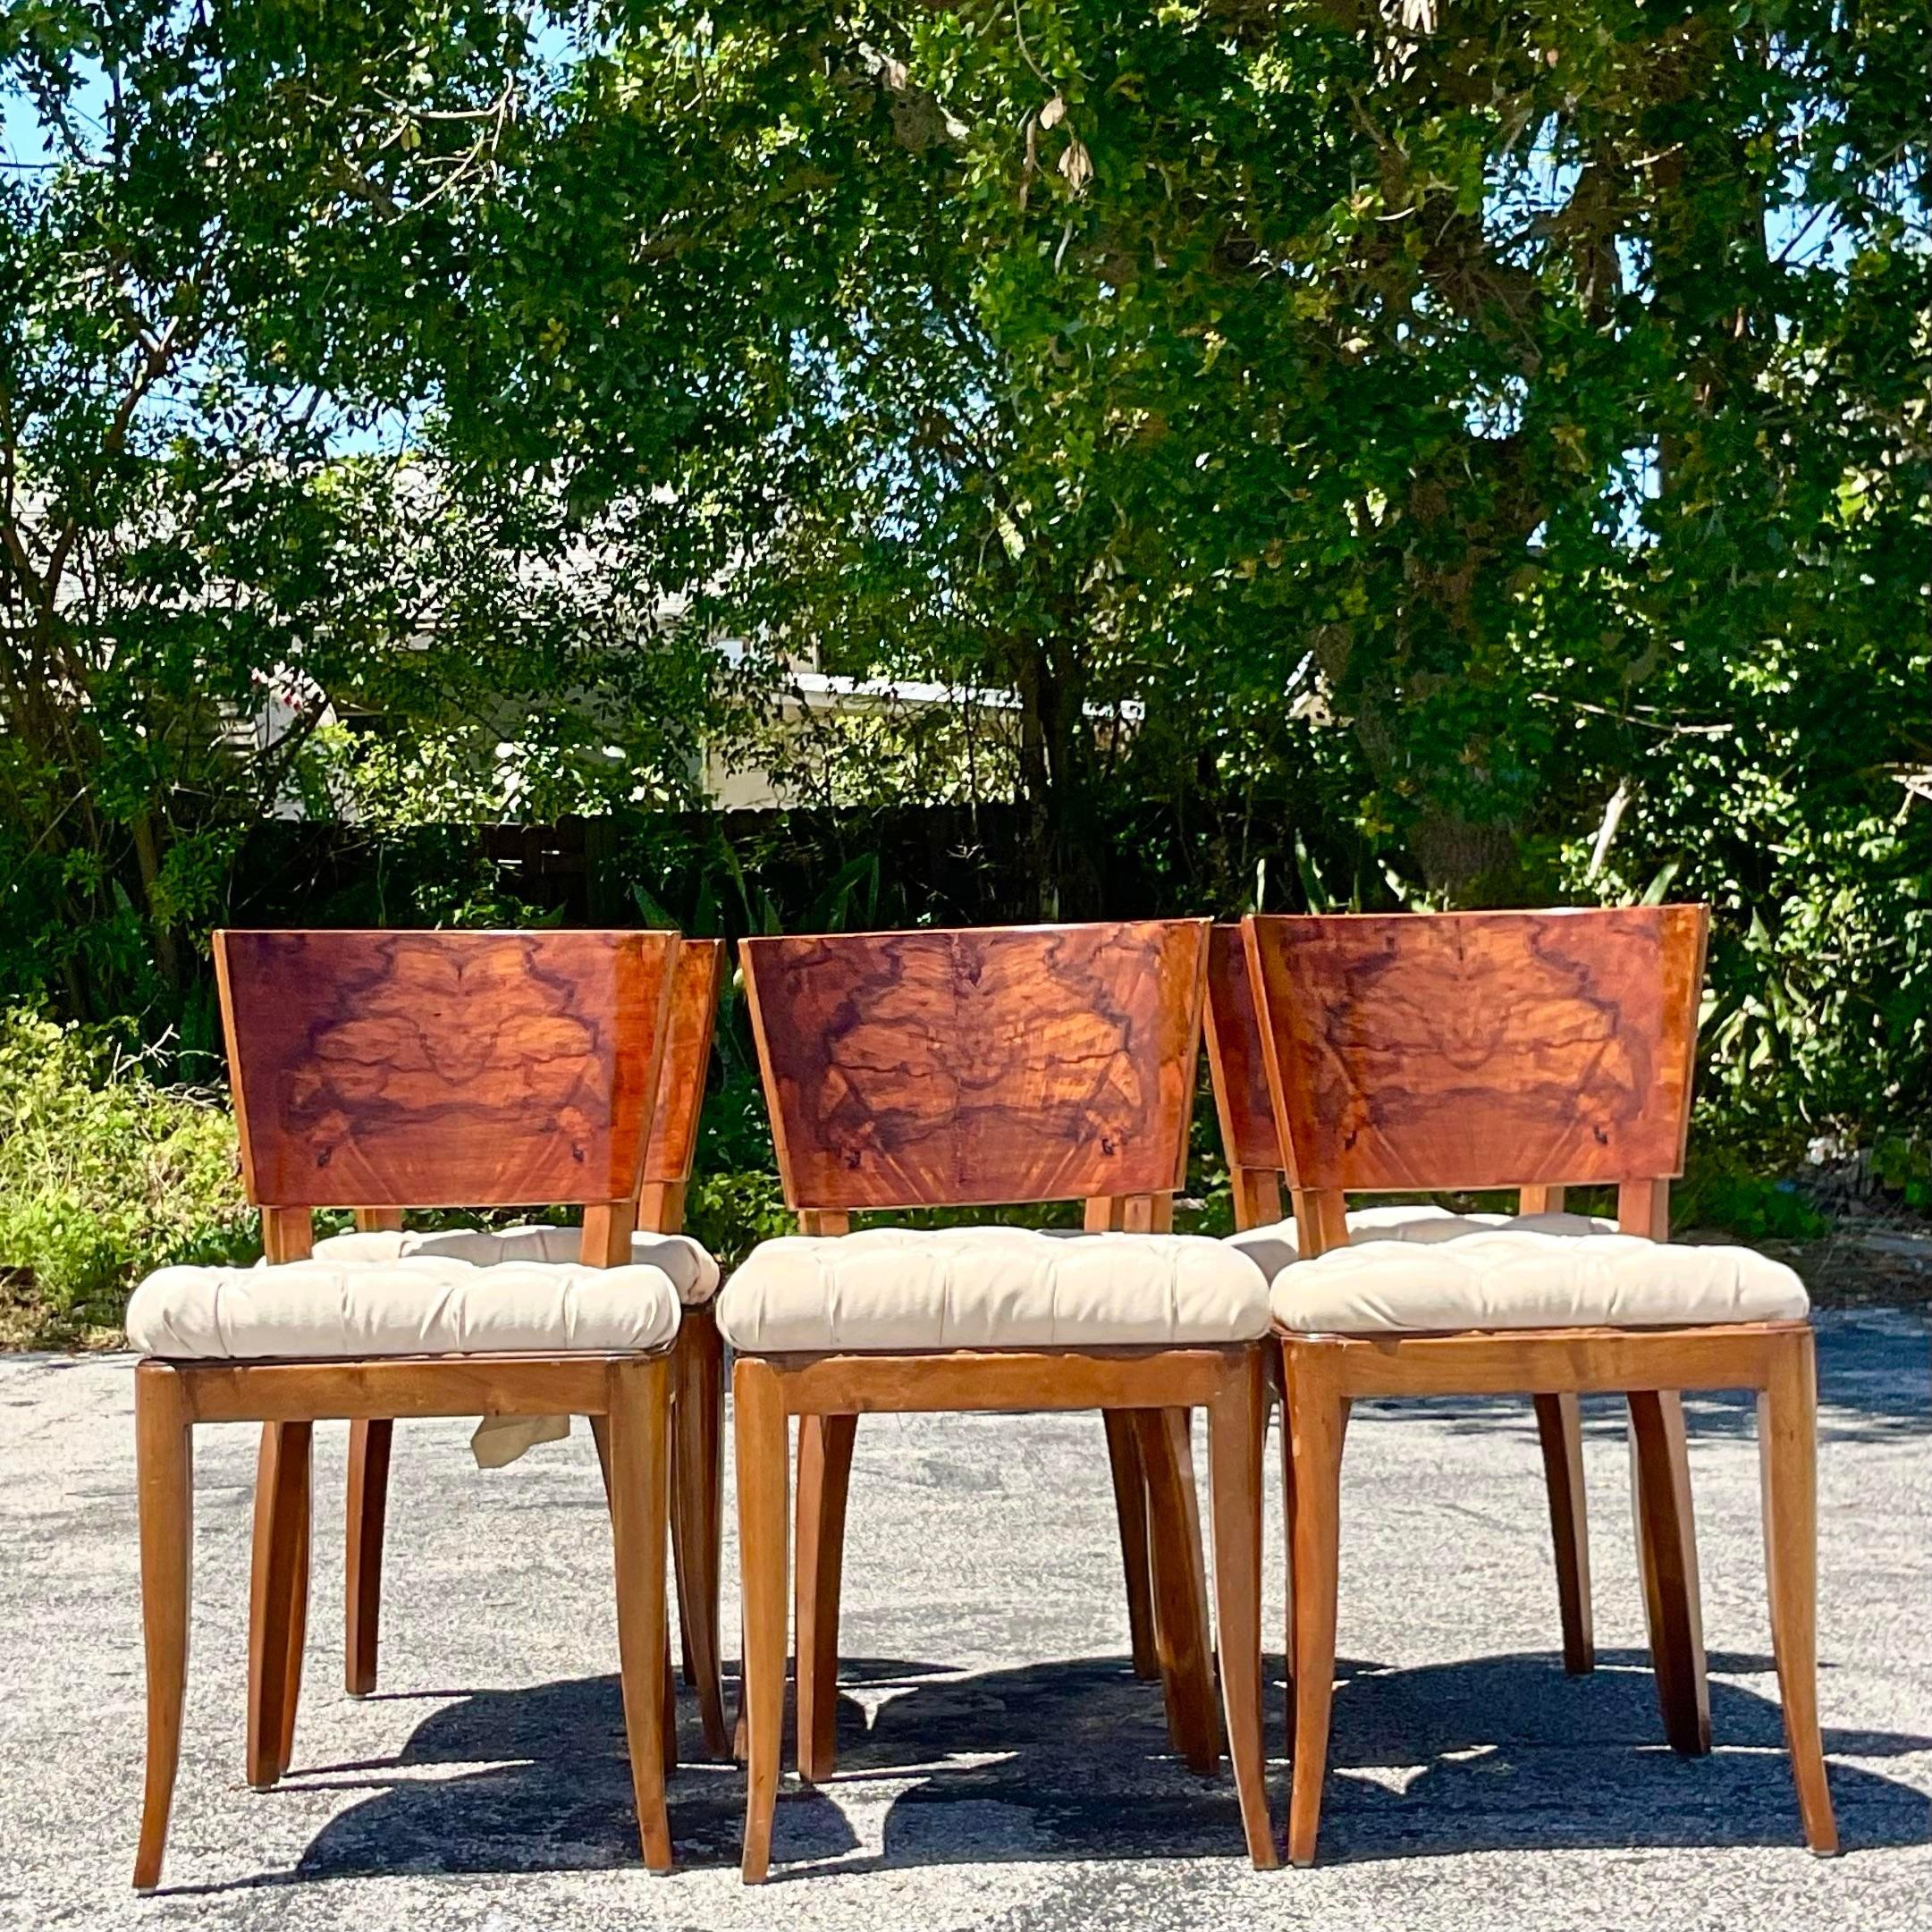 Ein atemberaubender Satz von sechs Vintage Deco Esszimmerstühlen. Wunderschöne Rückseiten aus Wurzelholz mit unglaublichen Holzmaserungsdetails. Schicke getuftete Flachs-Sitze in gutem Zustand. Erworben aus einem Nachlass in Palm Beach.